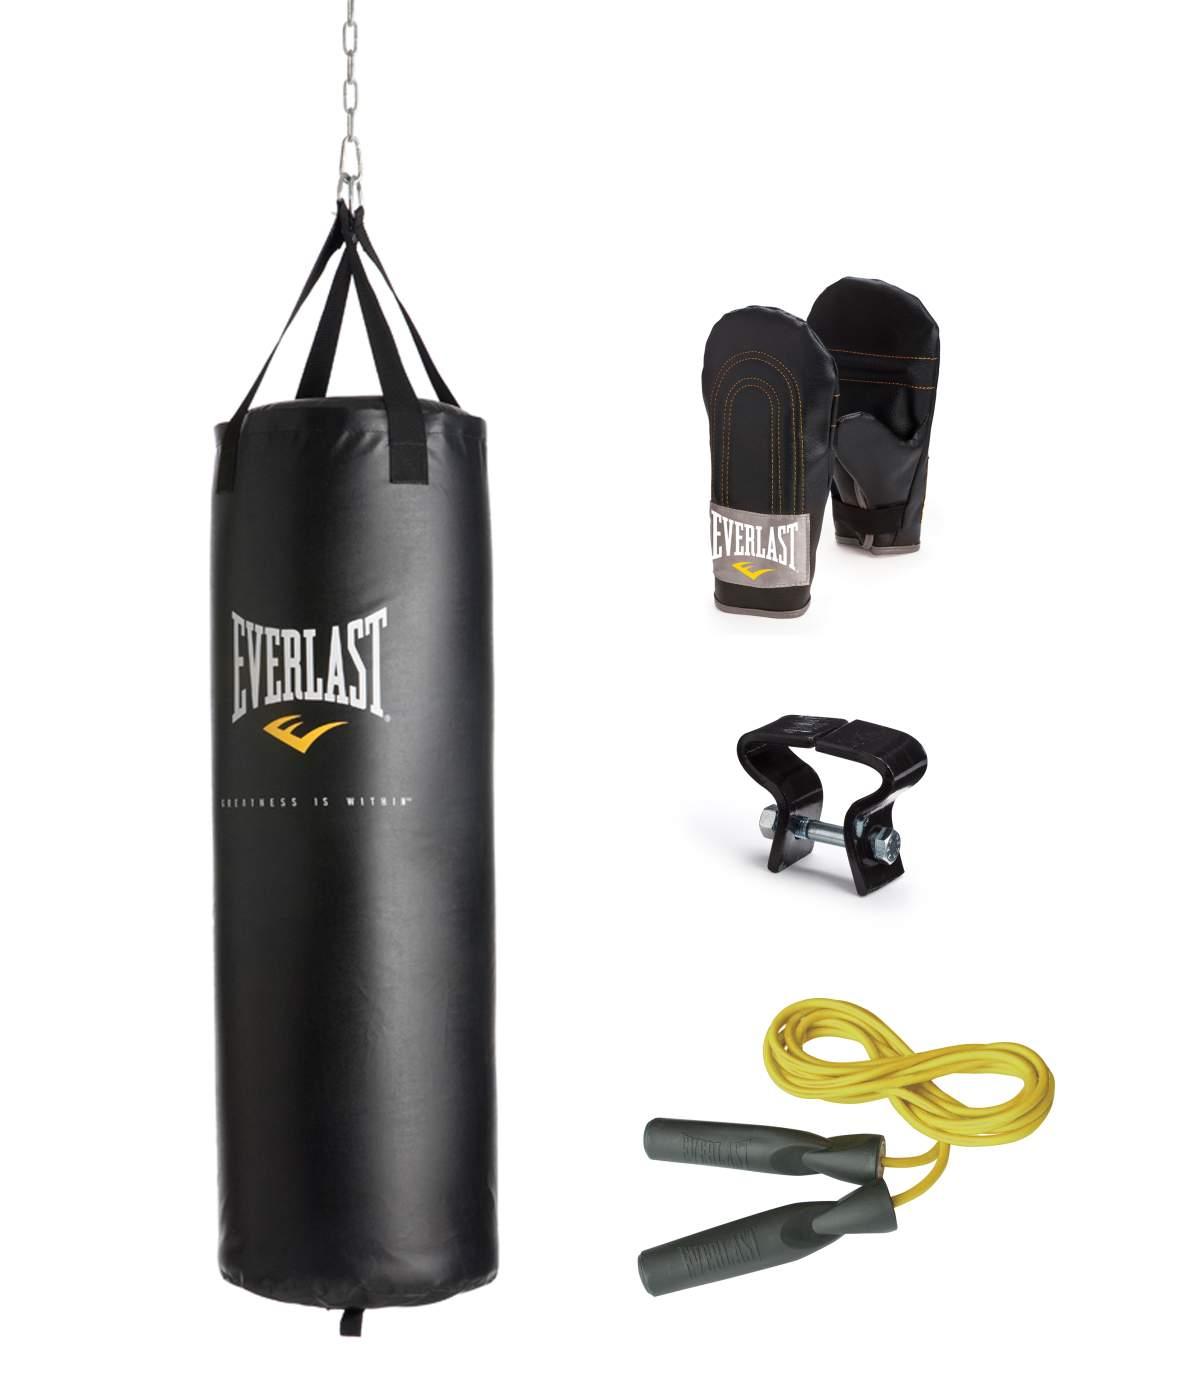 Everlast® 60 lb Heavy Bag Kit   Black   Fitness & Sports   Boxing